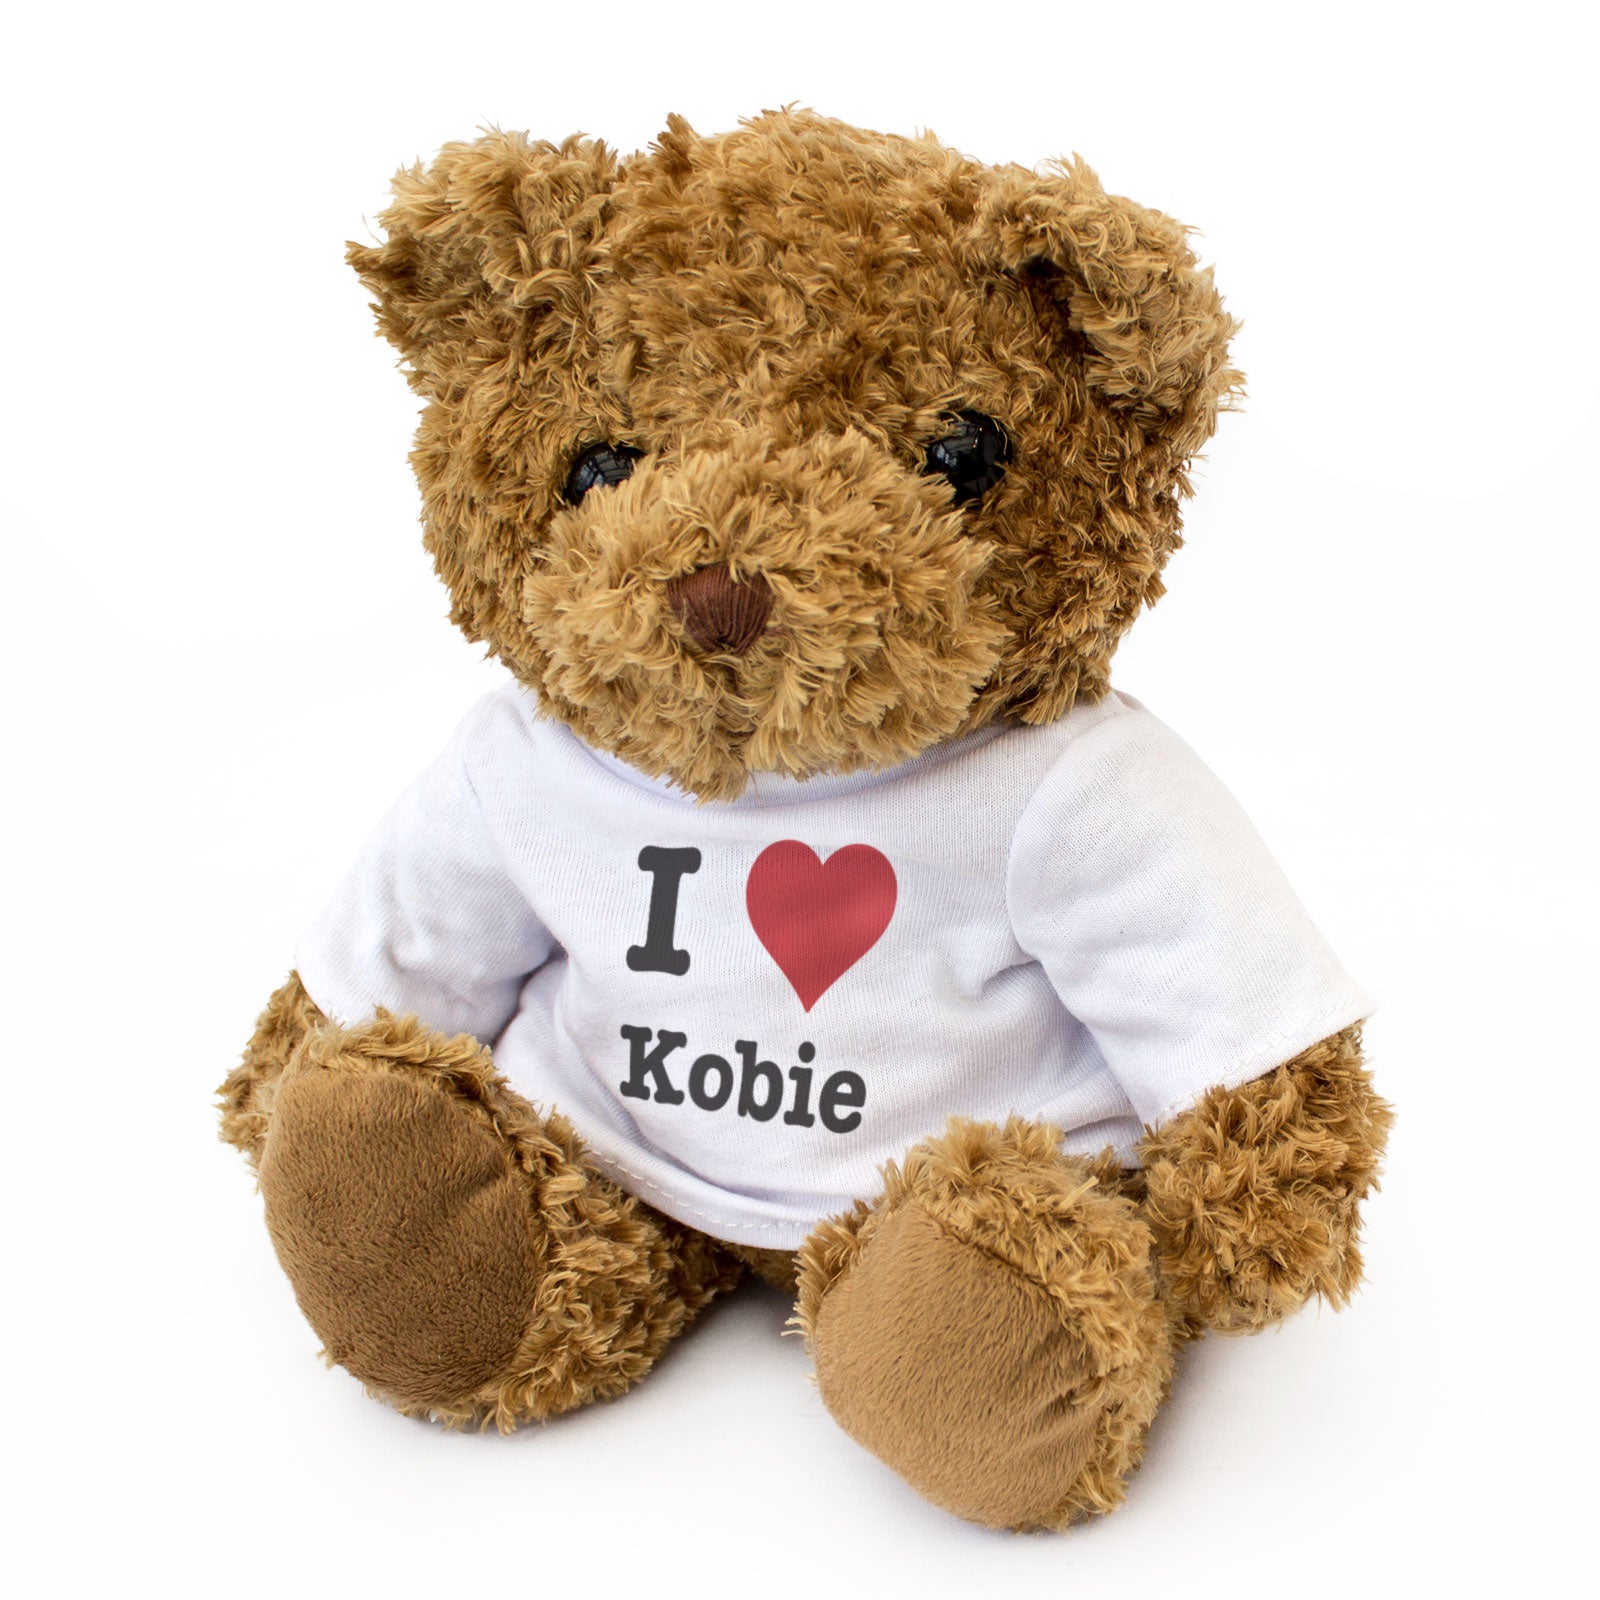 I Love Kobie - Teddy Bear